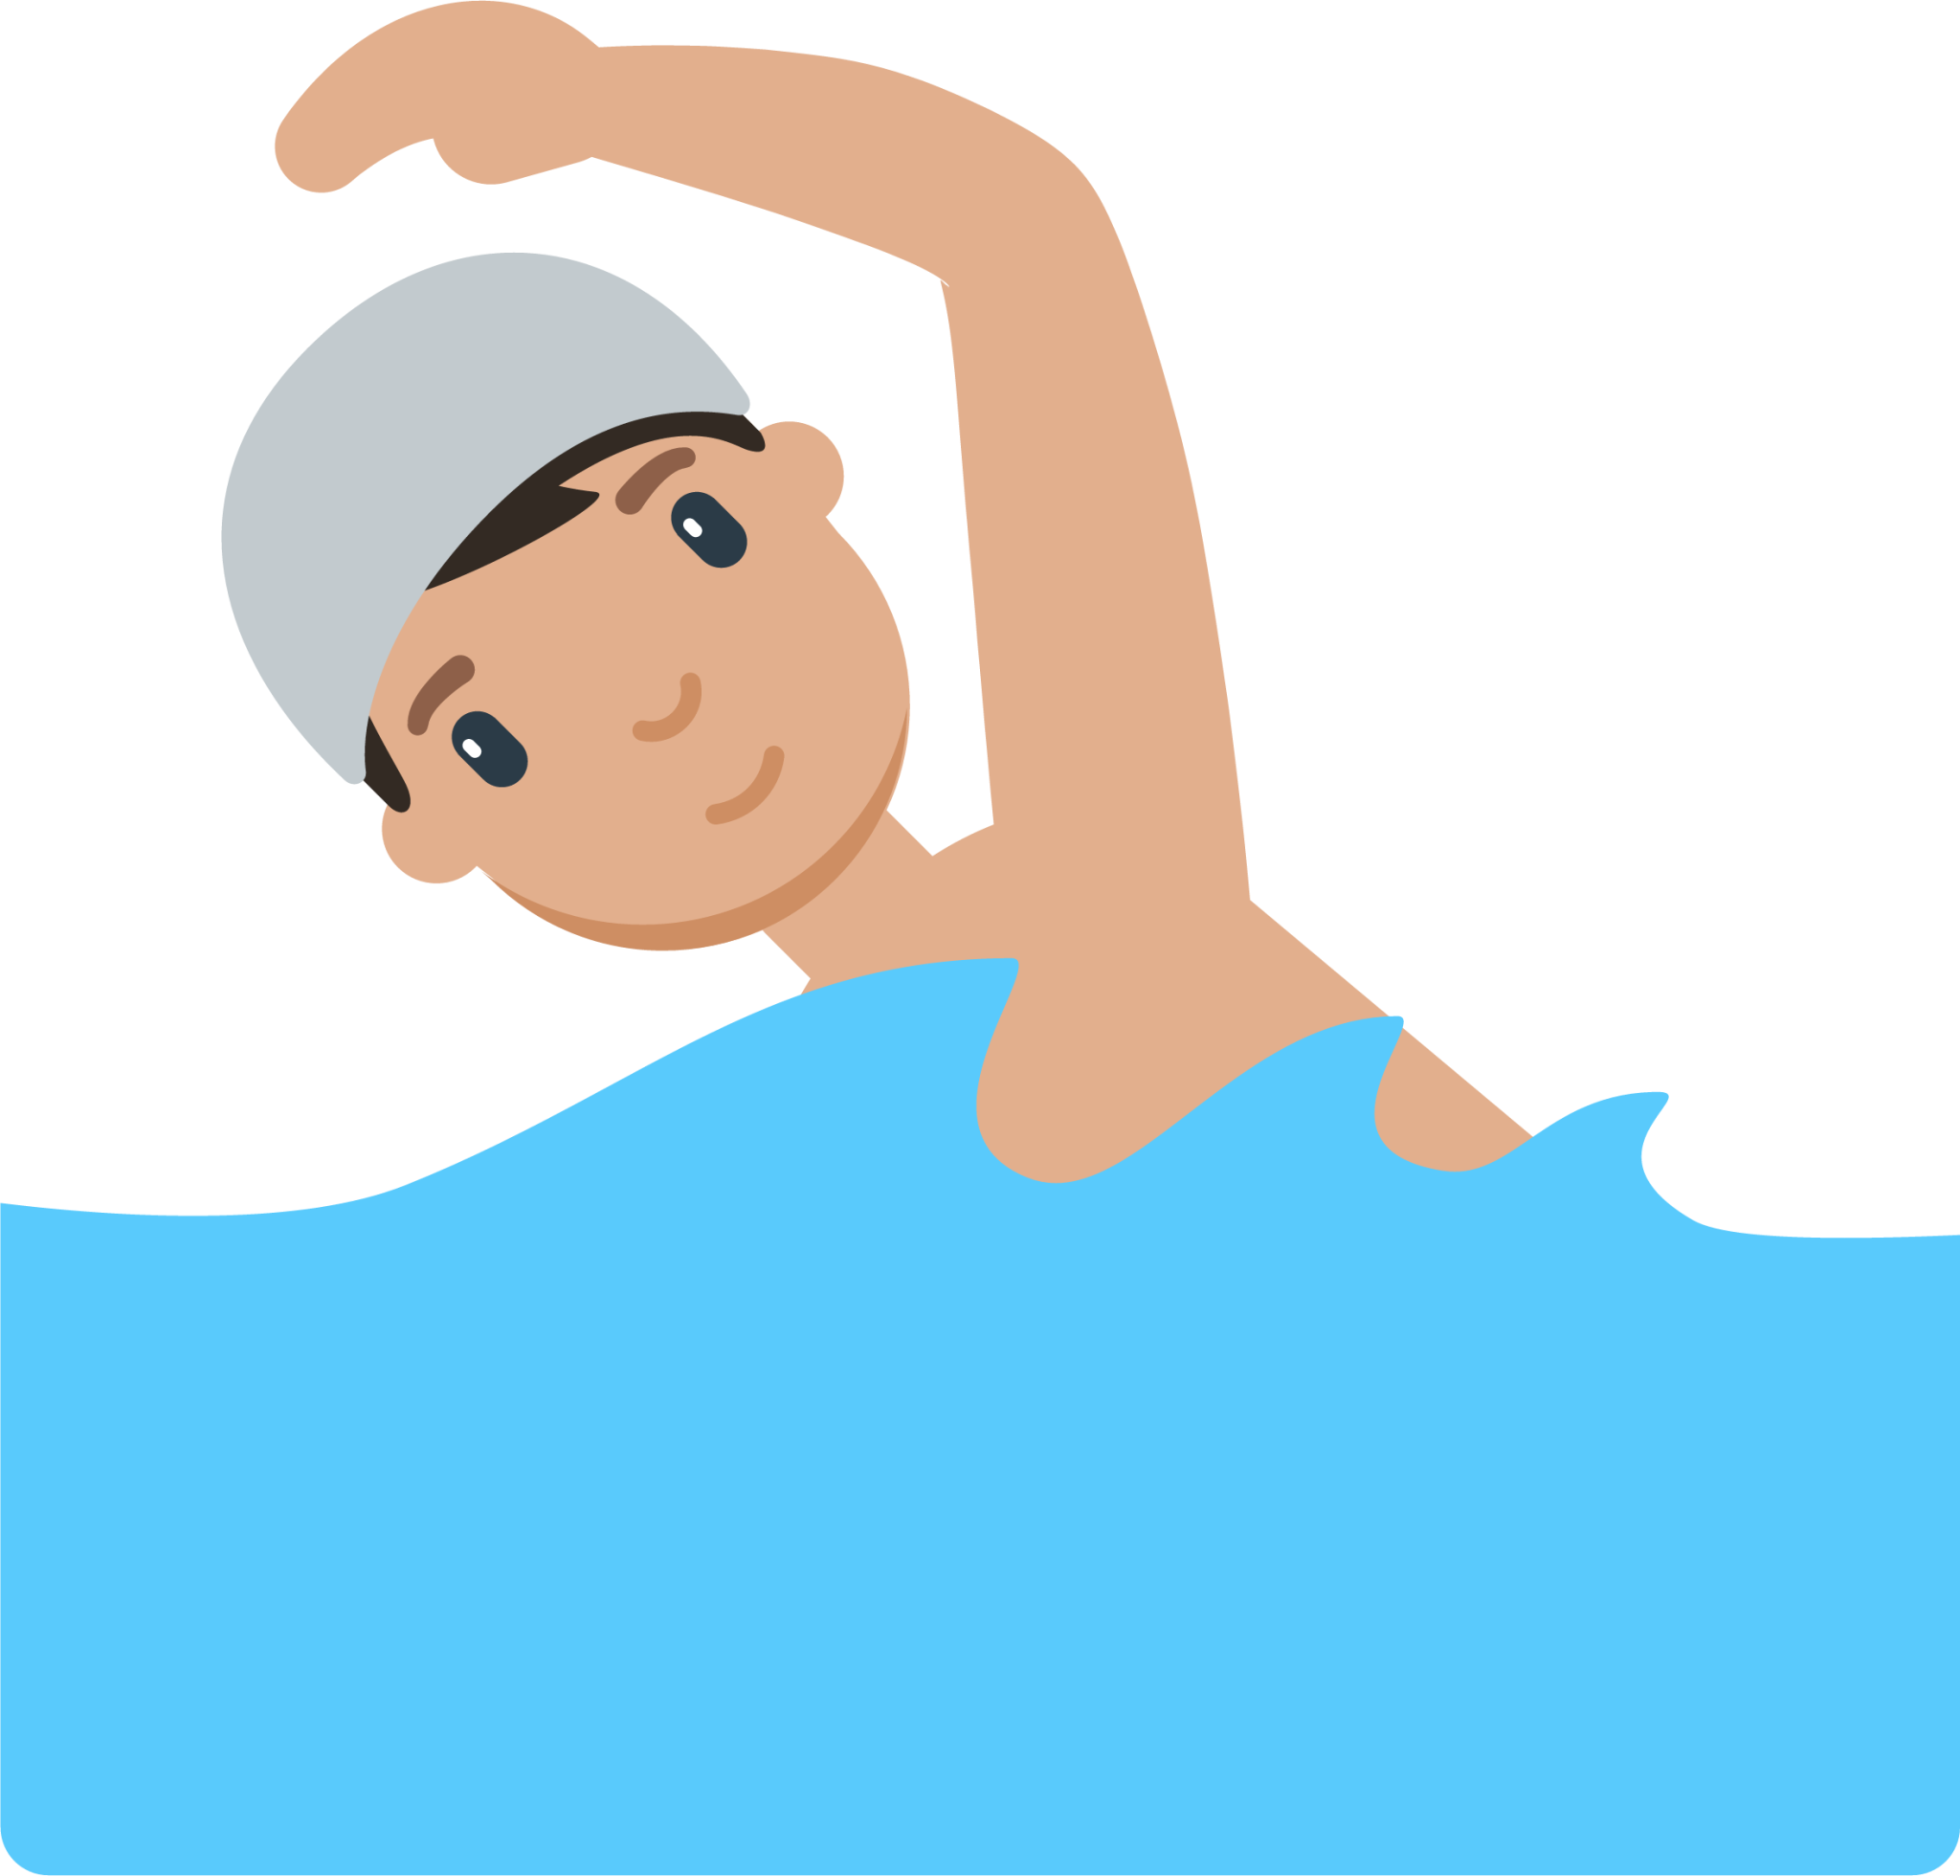 someone swimming cartoon